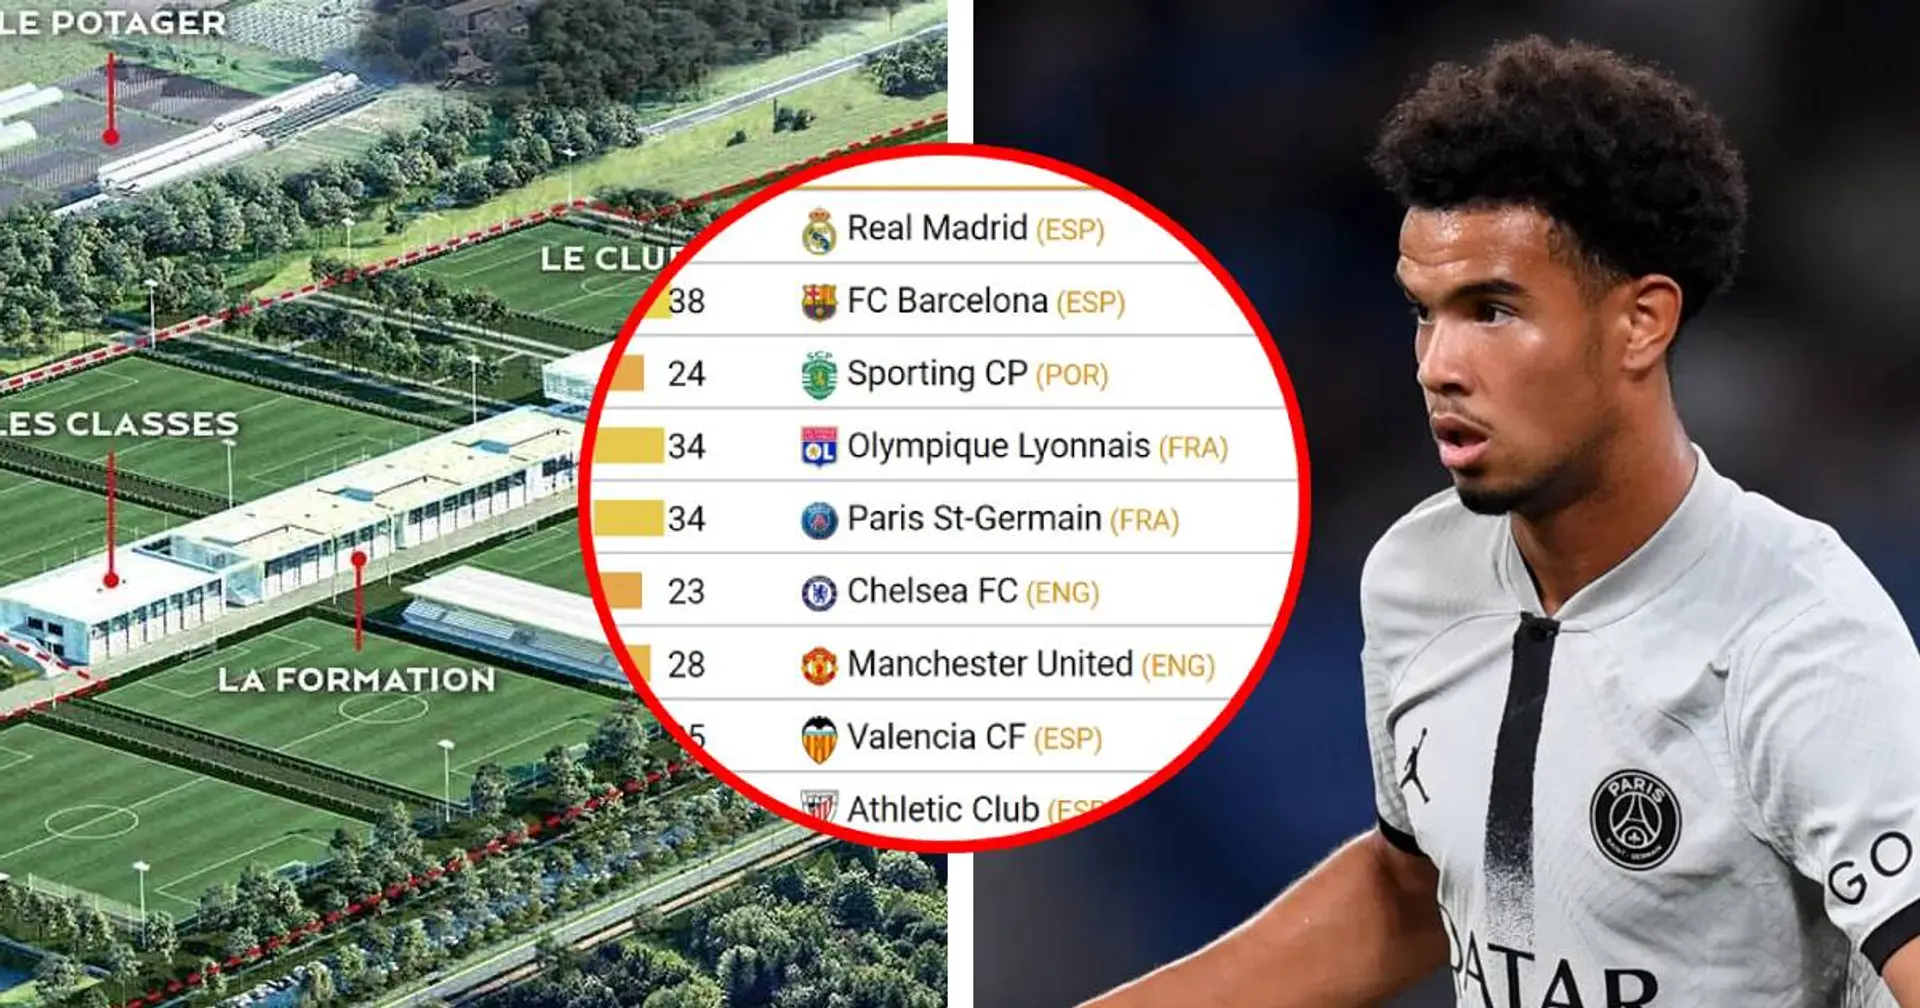 Le PSG parmi les clubs formant le plus de joueurs évoluant dans le top 5 des championnats européens - un bémol repéré